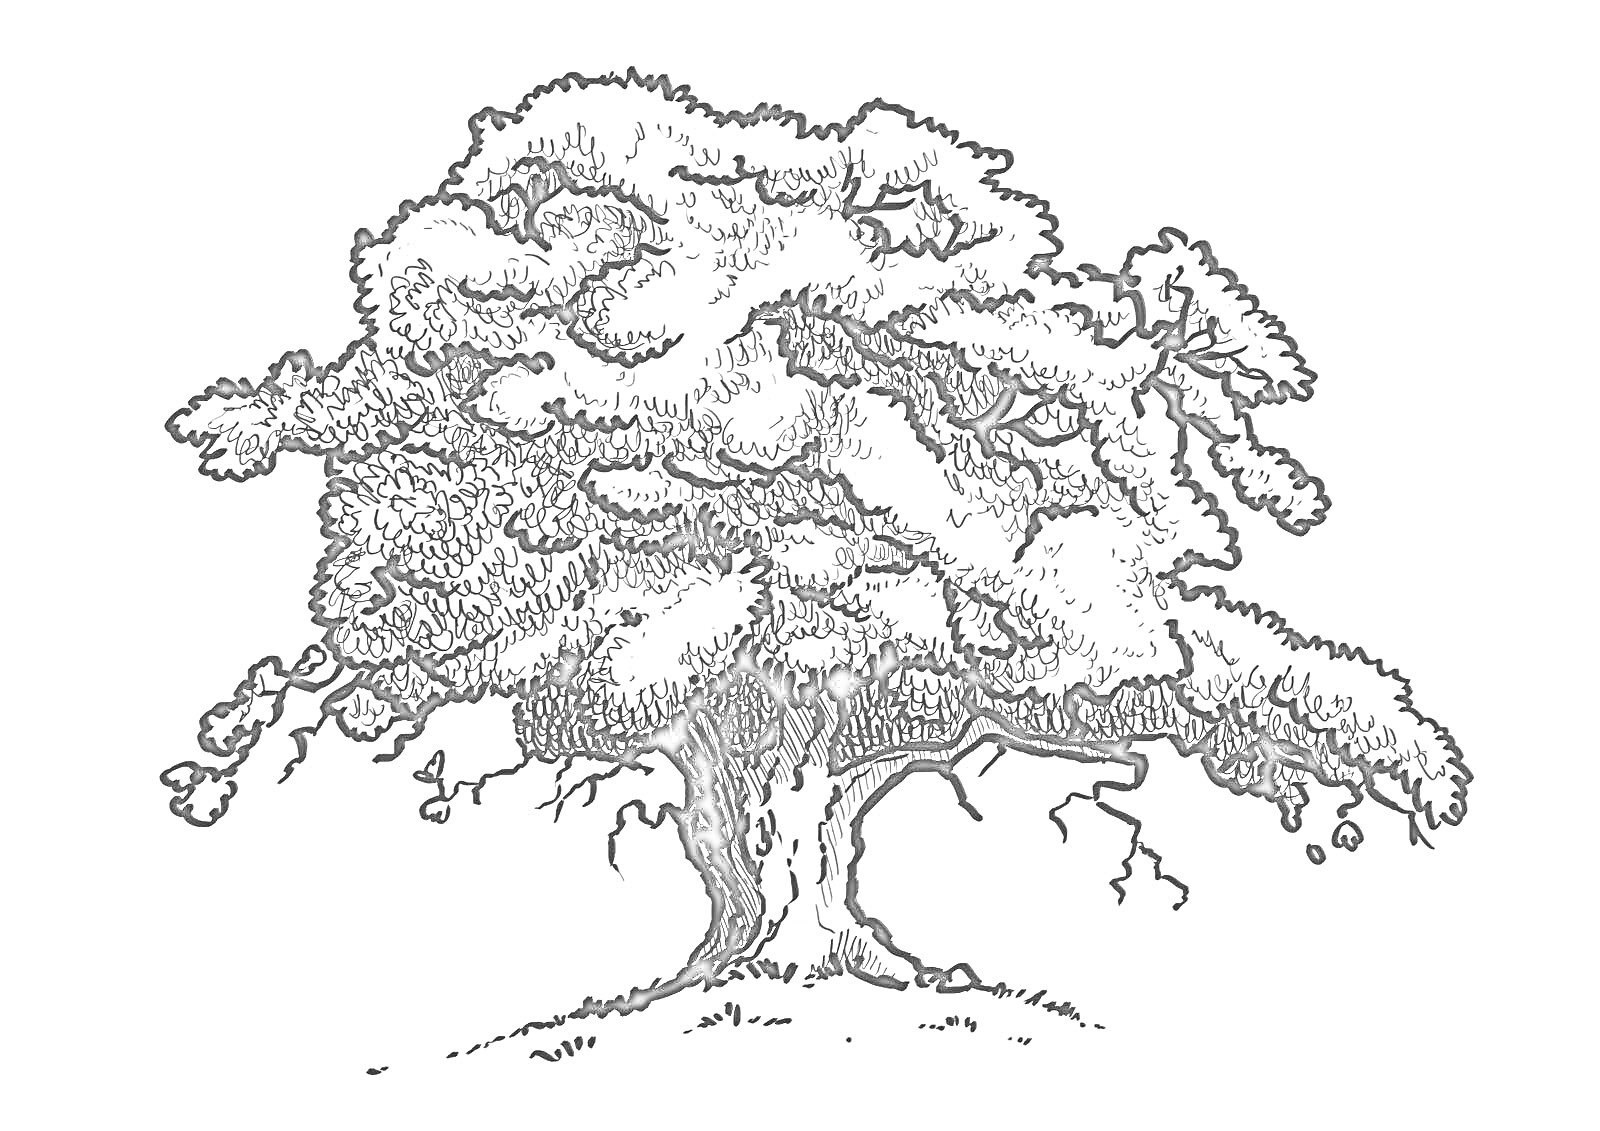 Дуб с раскидистой кроной и корнями на травянистой поверхности